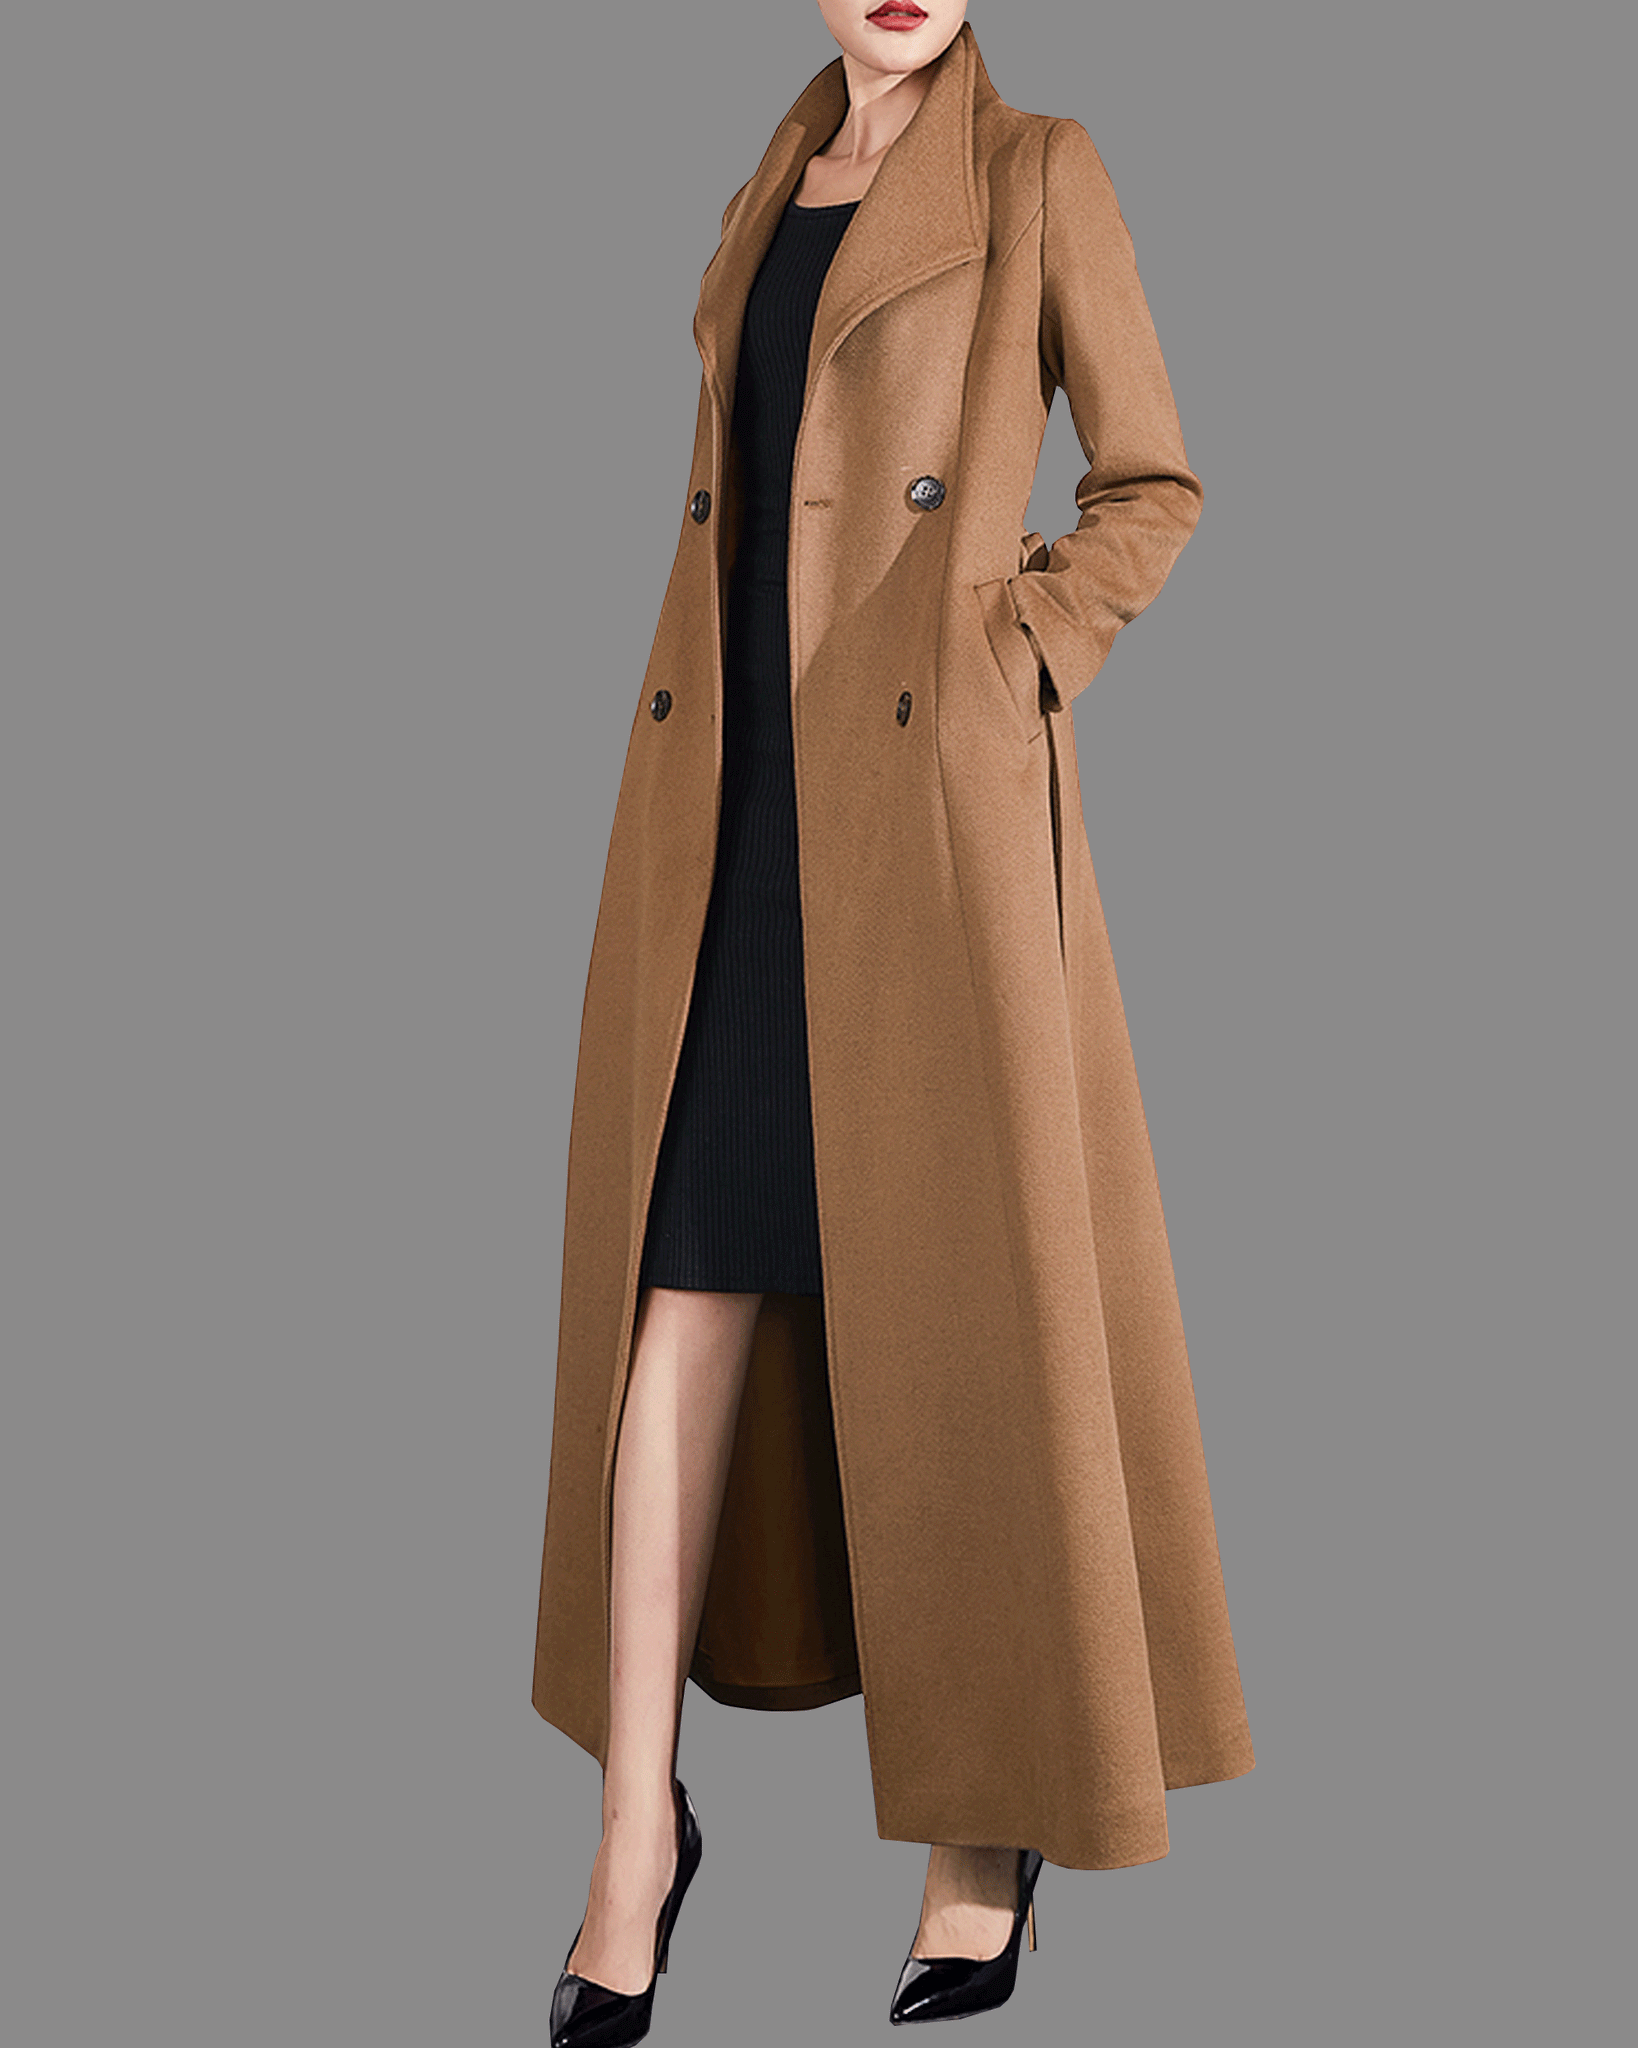 Wool coat women, winter coat, long jacket, double breasted jacket